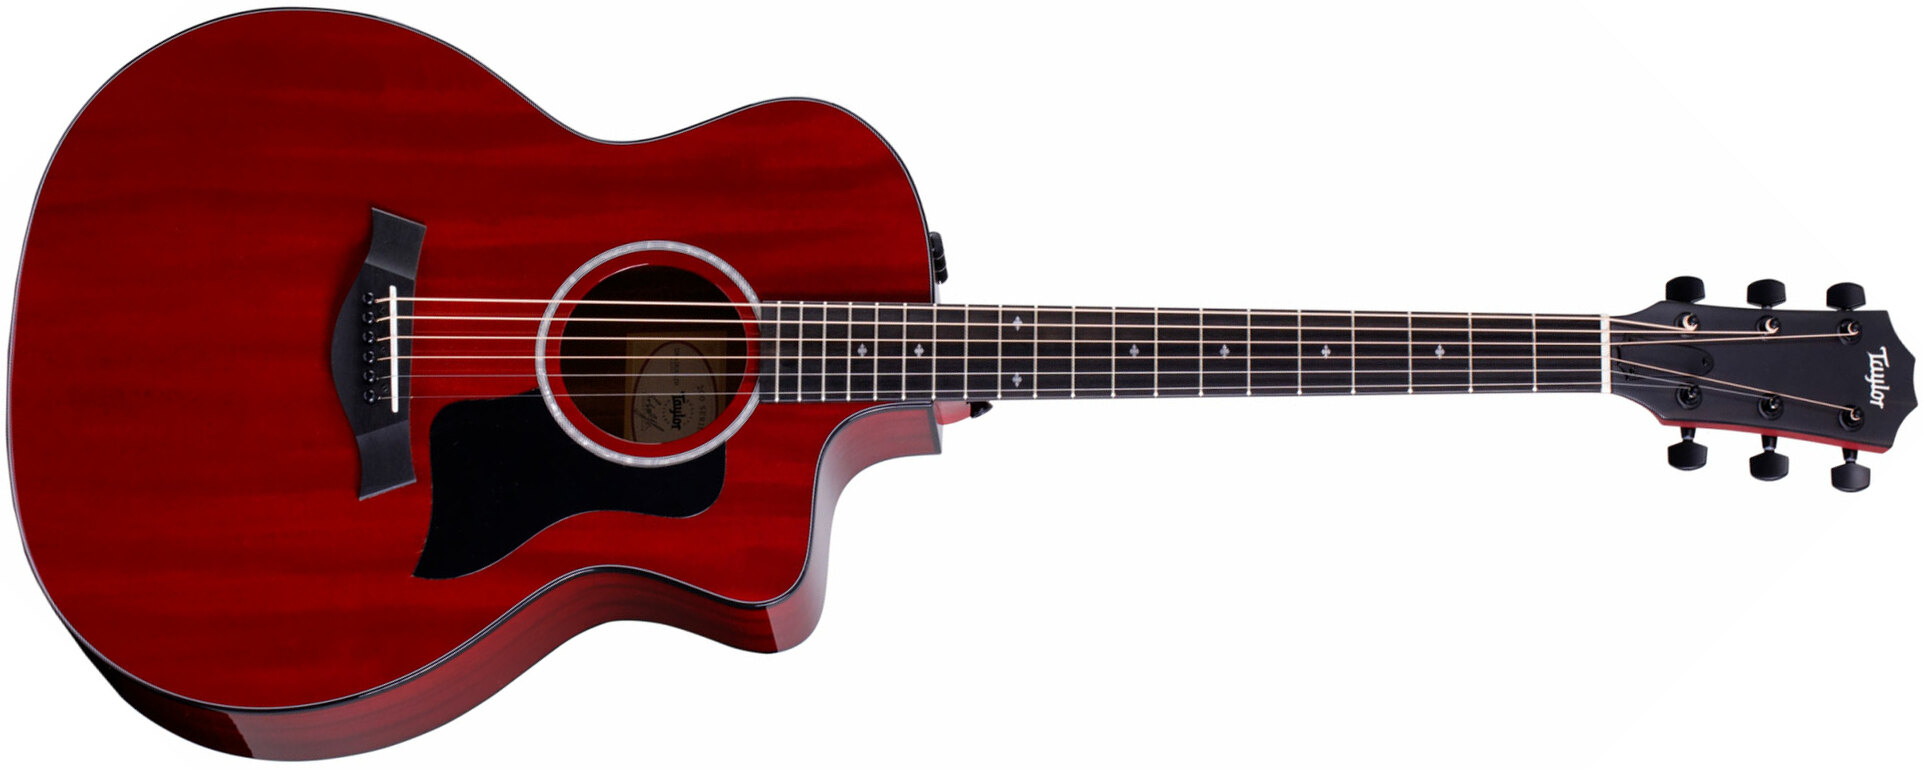 Taylor 224ce Dlx Ltd Grand Auditorium Cw Acajou Sapele Eb Es2 - Trans Red - Electro acoustic guitar - Main picture